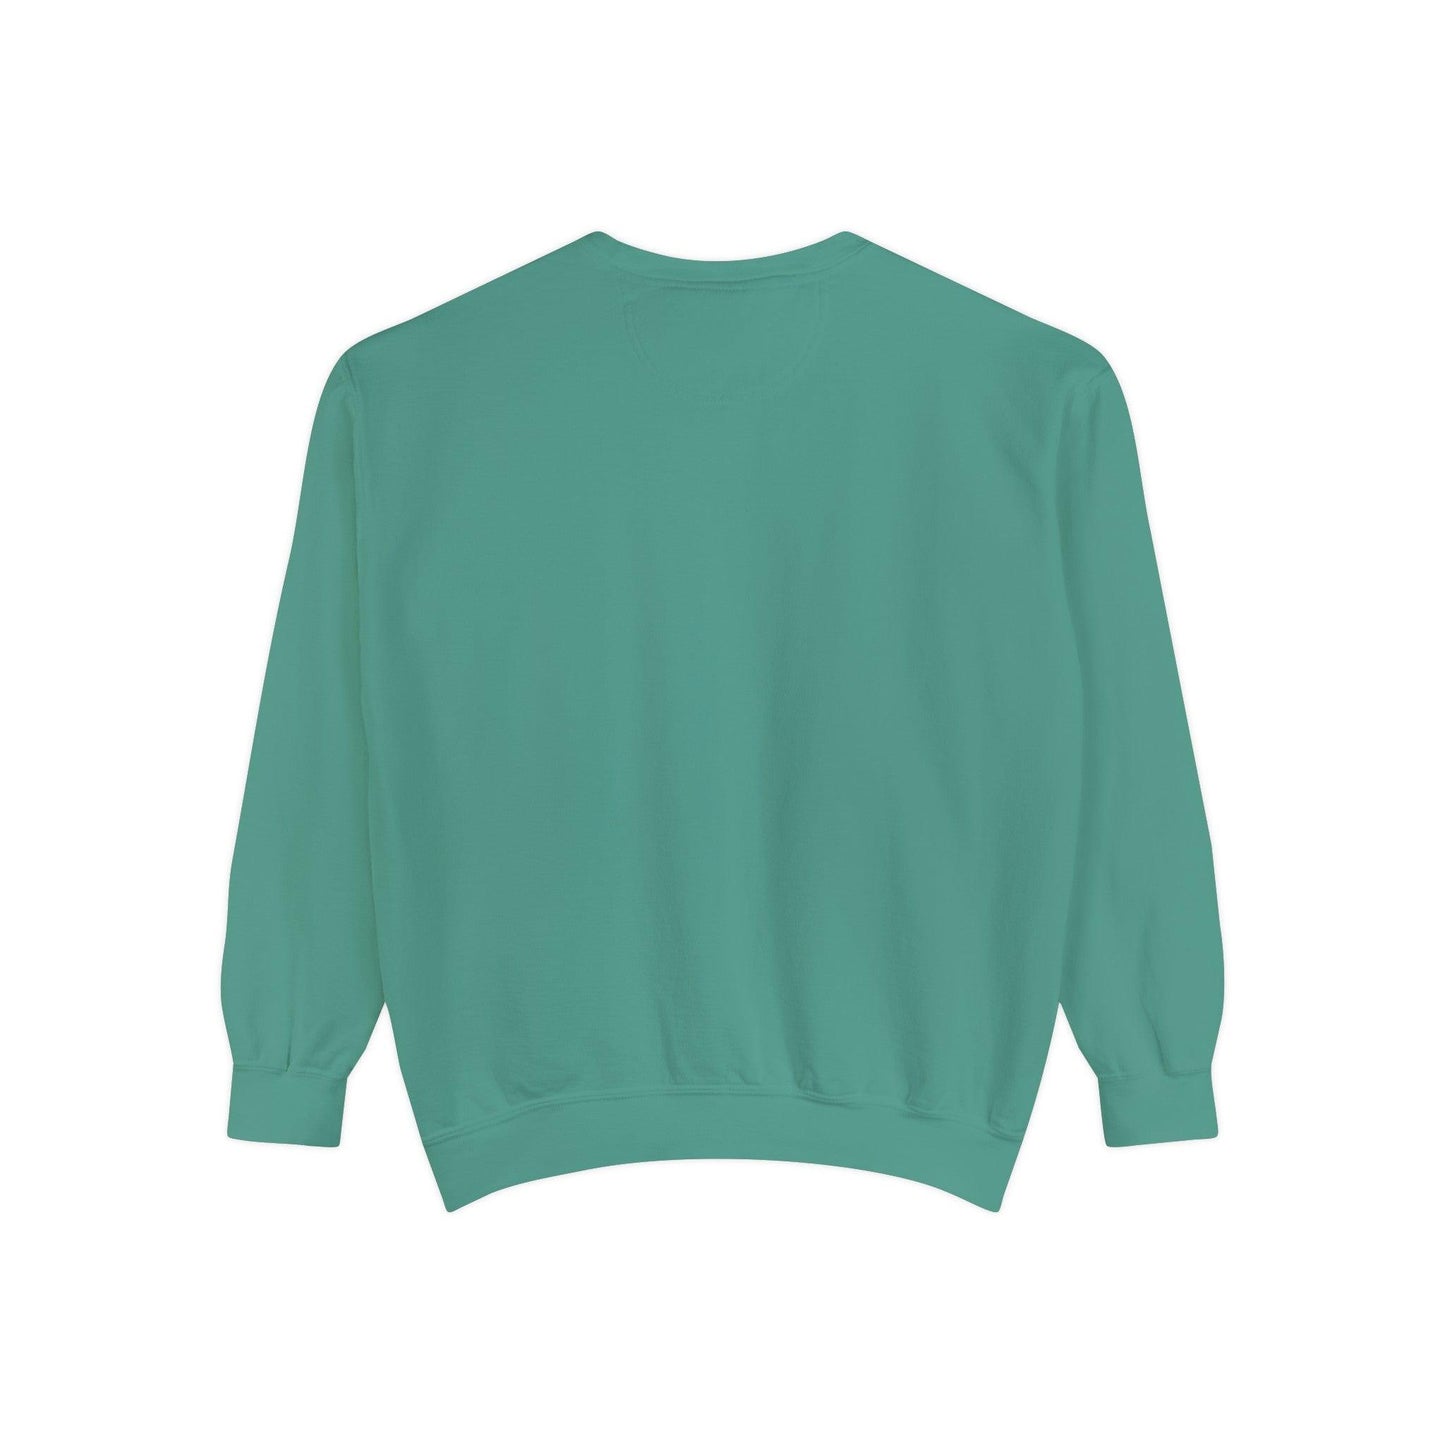 Just one more Chapter - Comfort Colors Sweatshirt - BentleyBlueCo